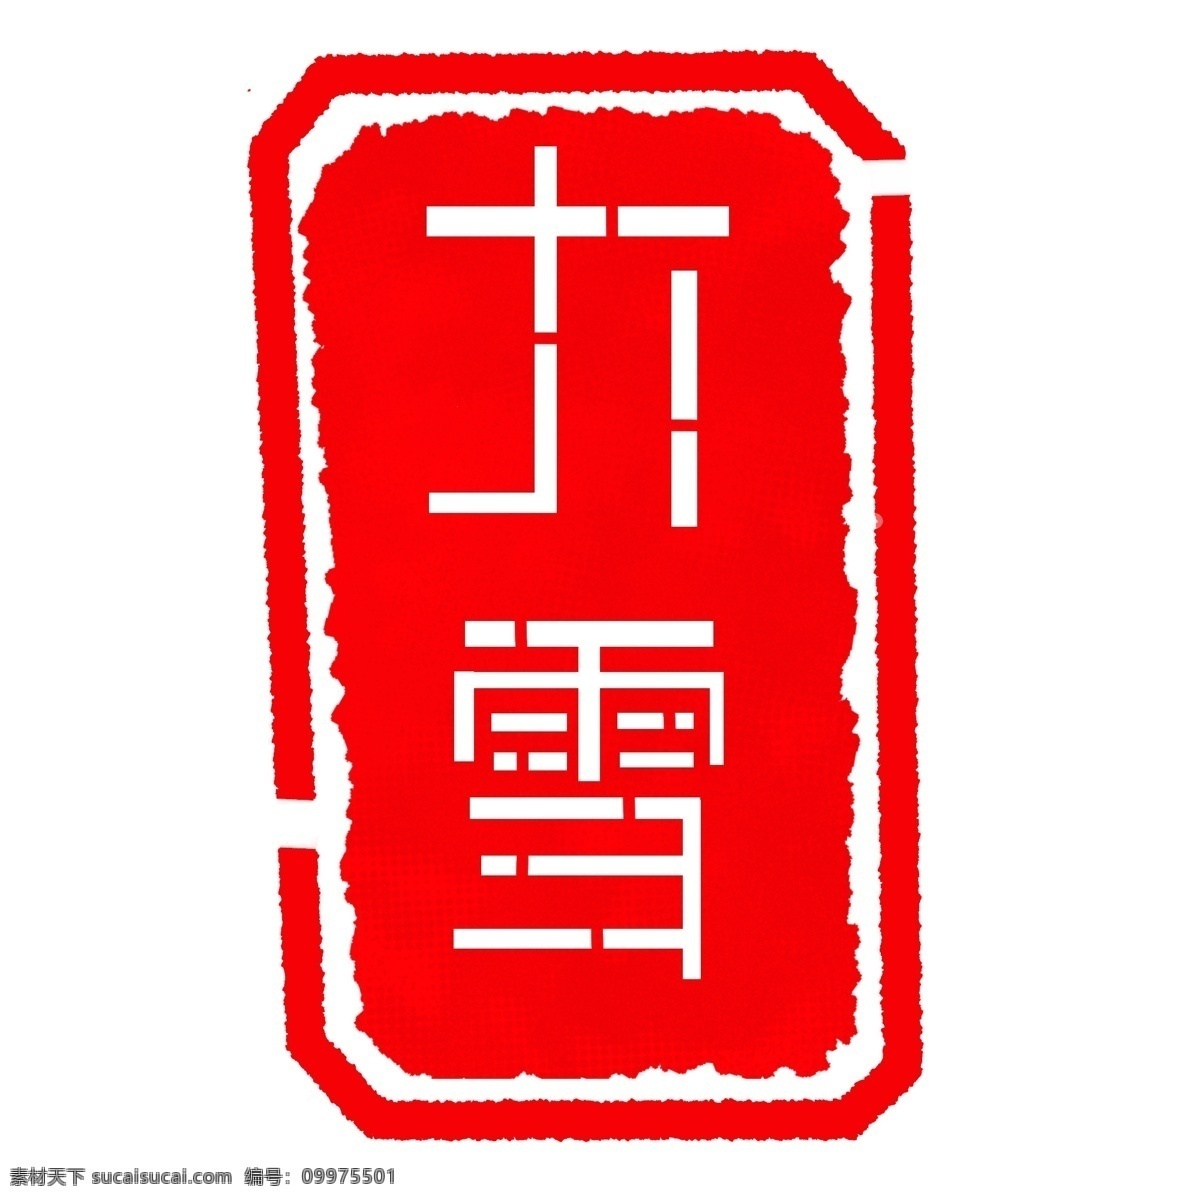 立体 字 大雪 印章 插画 立体字印章 二十四节气 红色字体 红色印章 大雪印章 印章插图 中国风印章